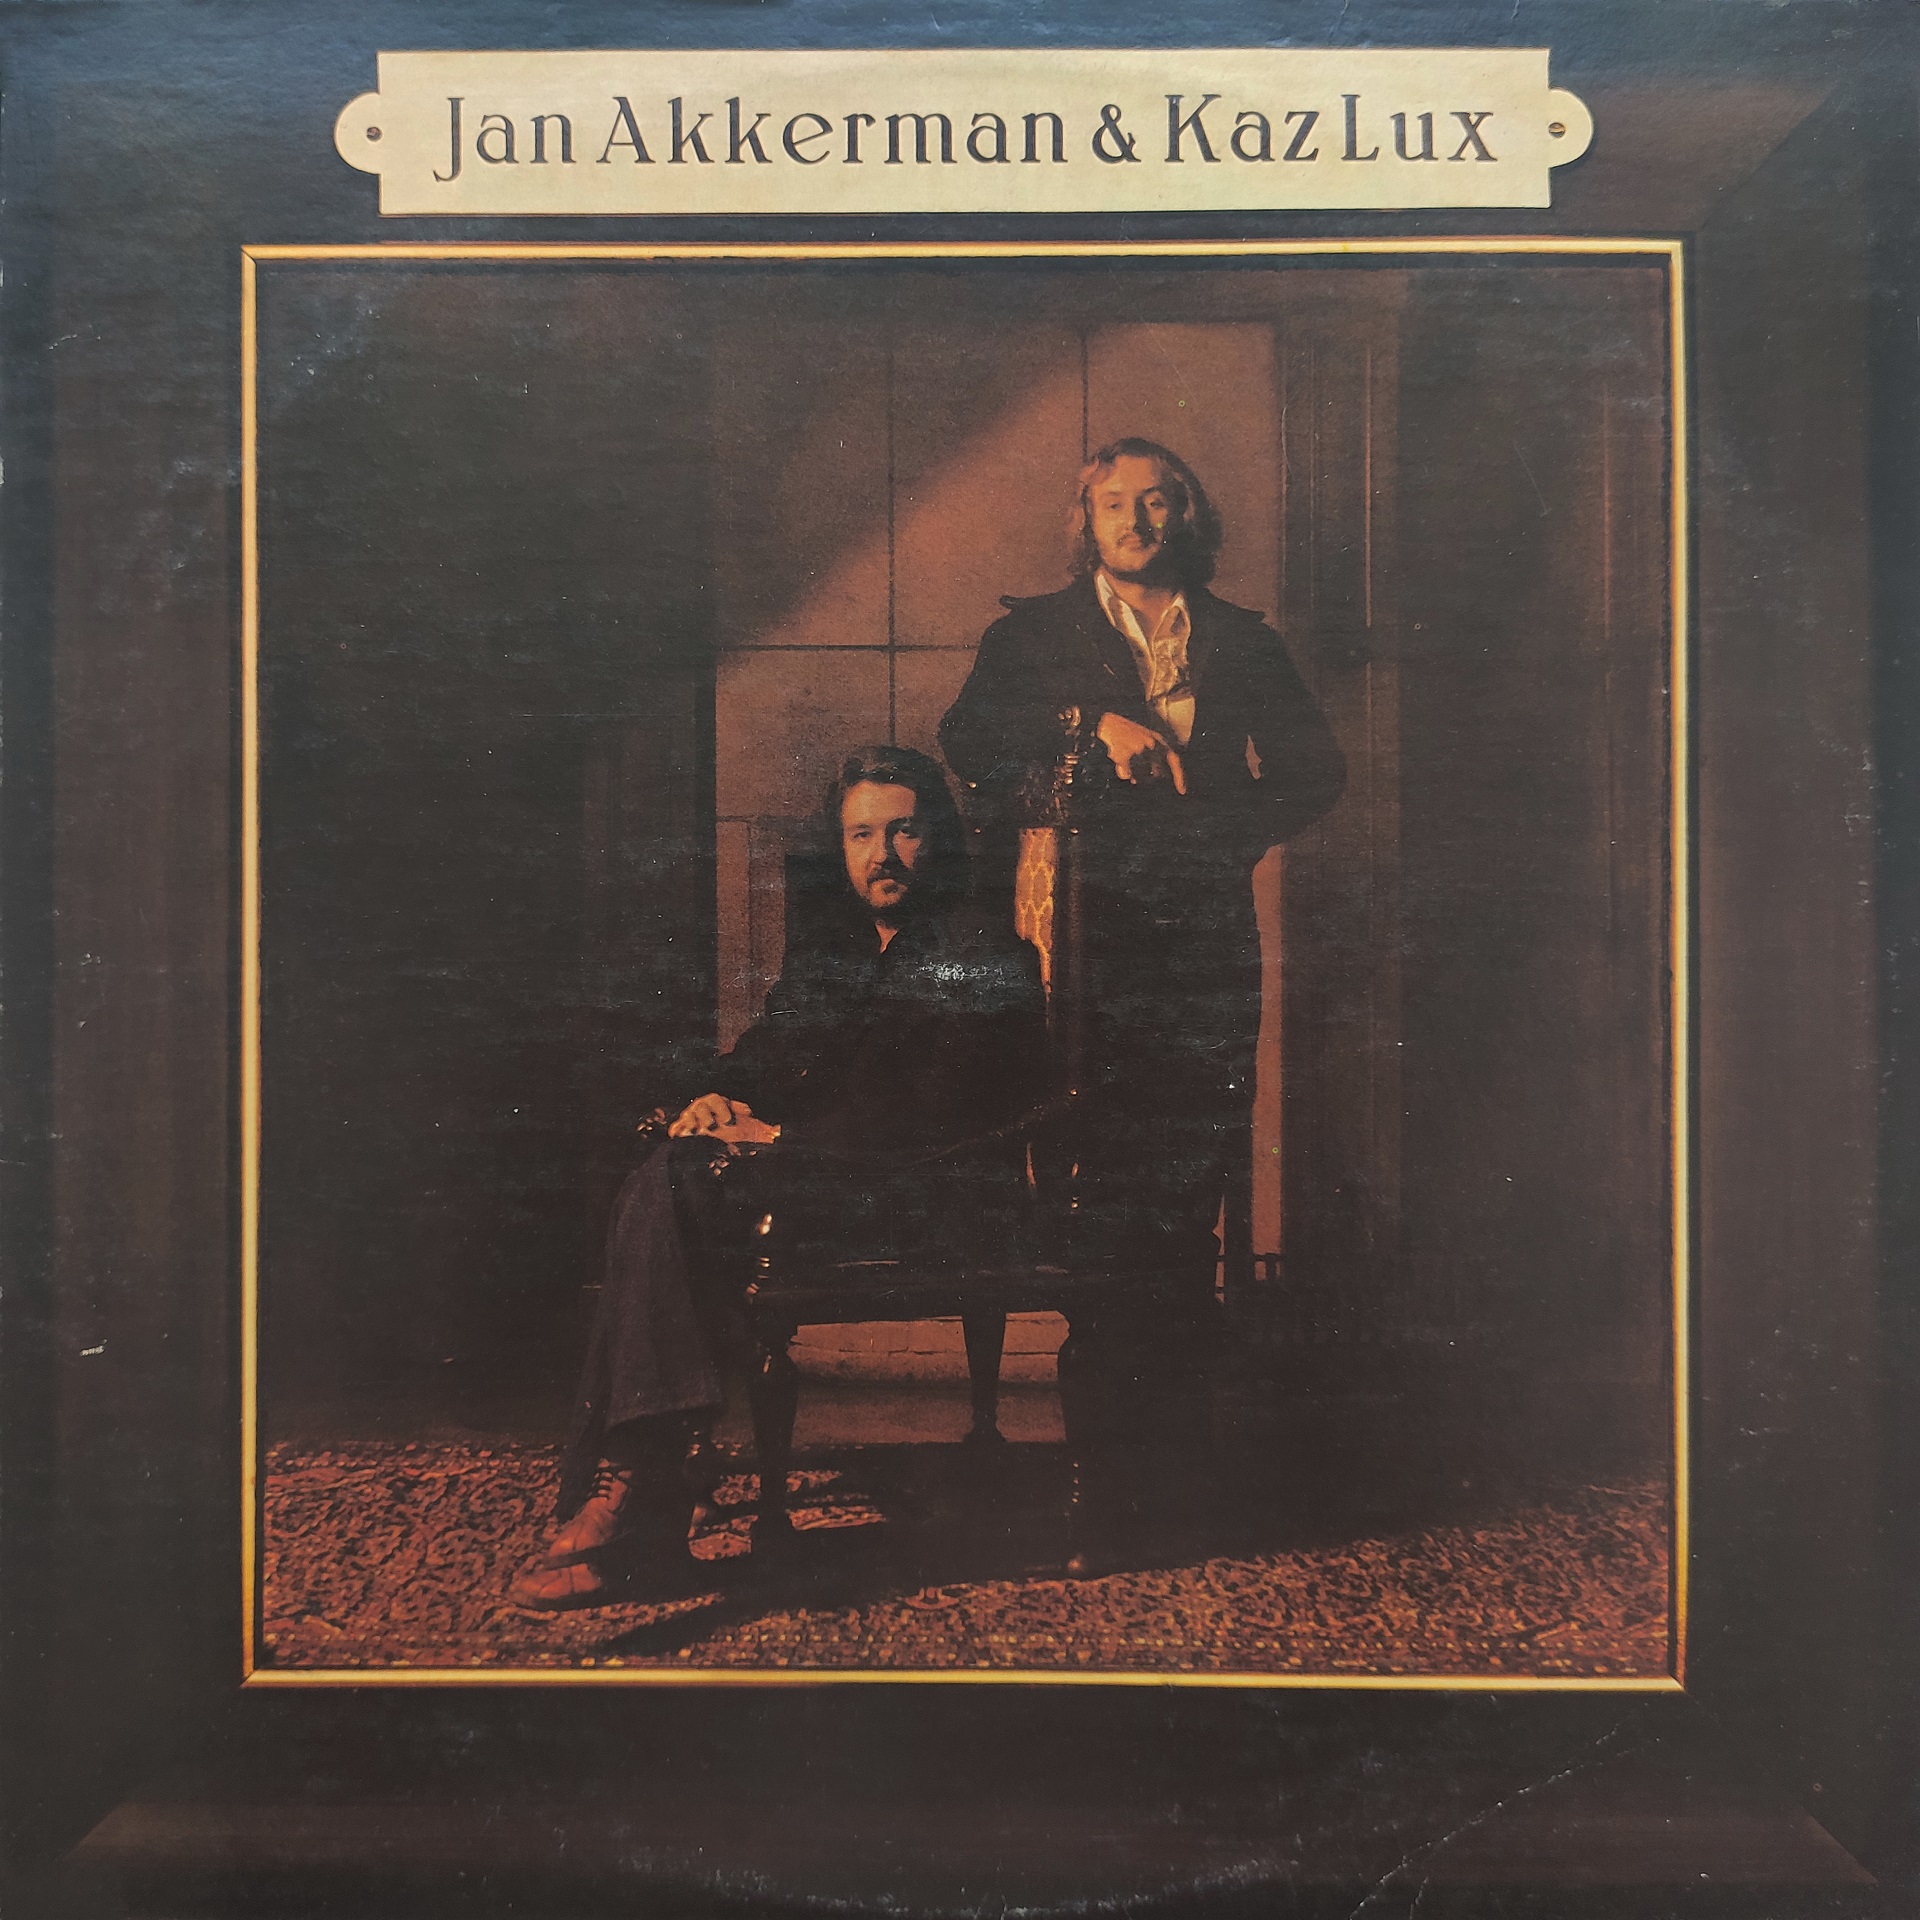 Jan Akkerman & Kaz Lux - Eli (1976) (24-192)